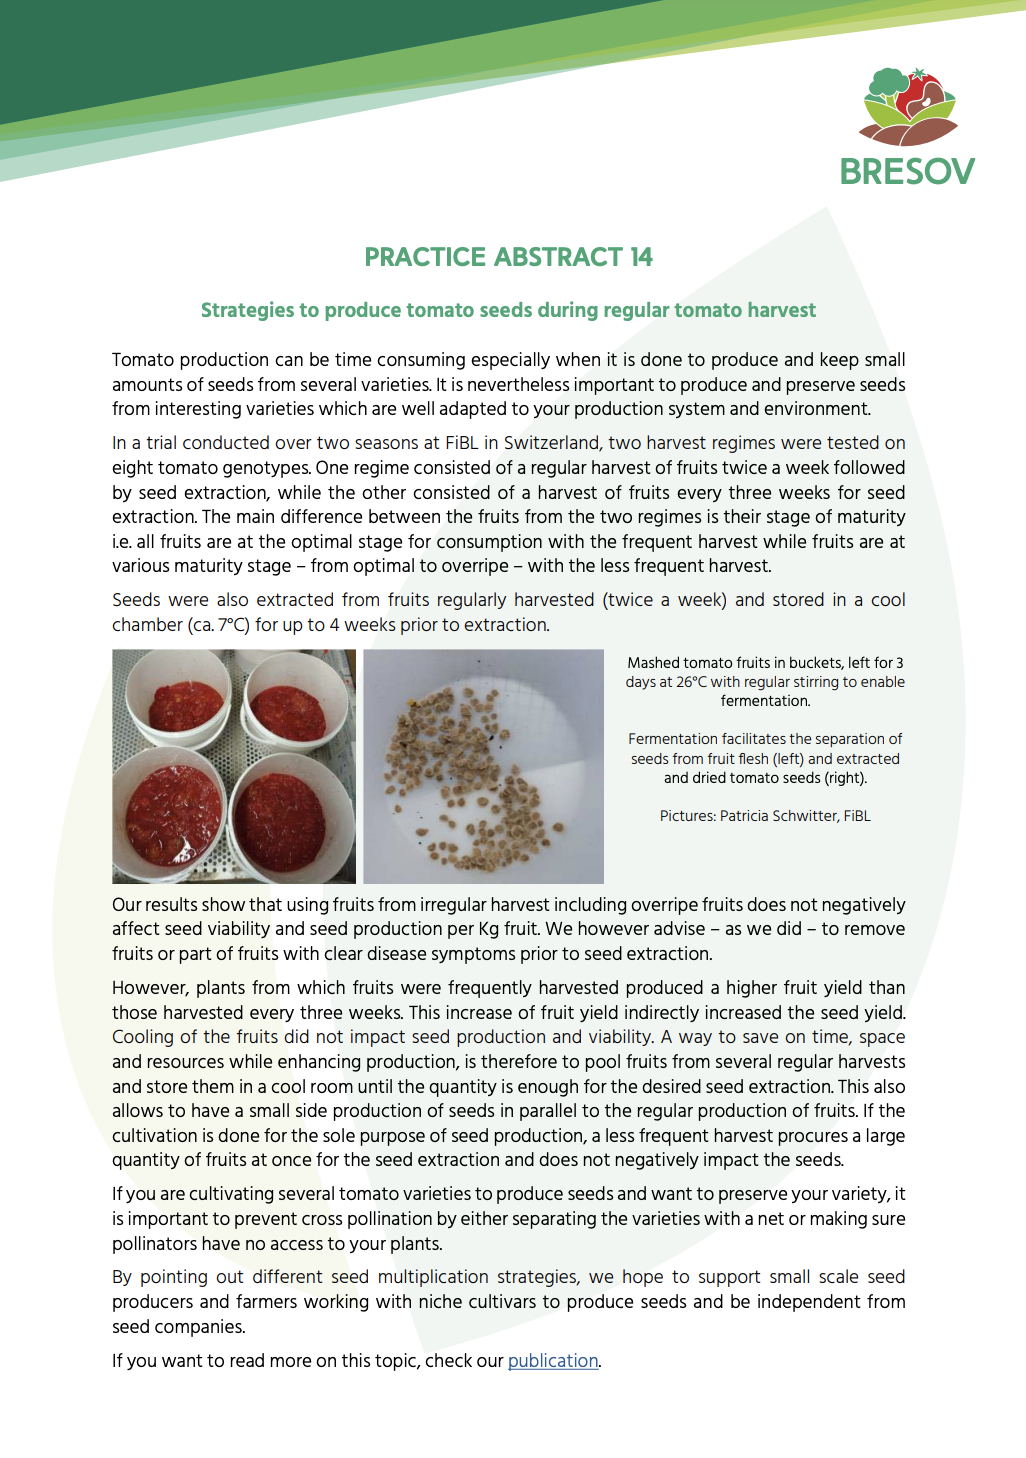 Strategier til at producere tomatfrø under almindelig tomathøst (BRESOV Practice Abstract)